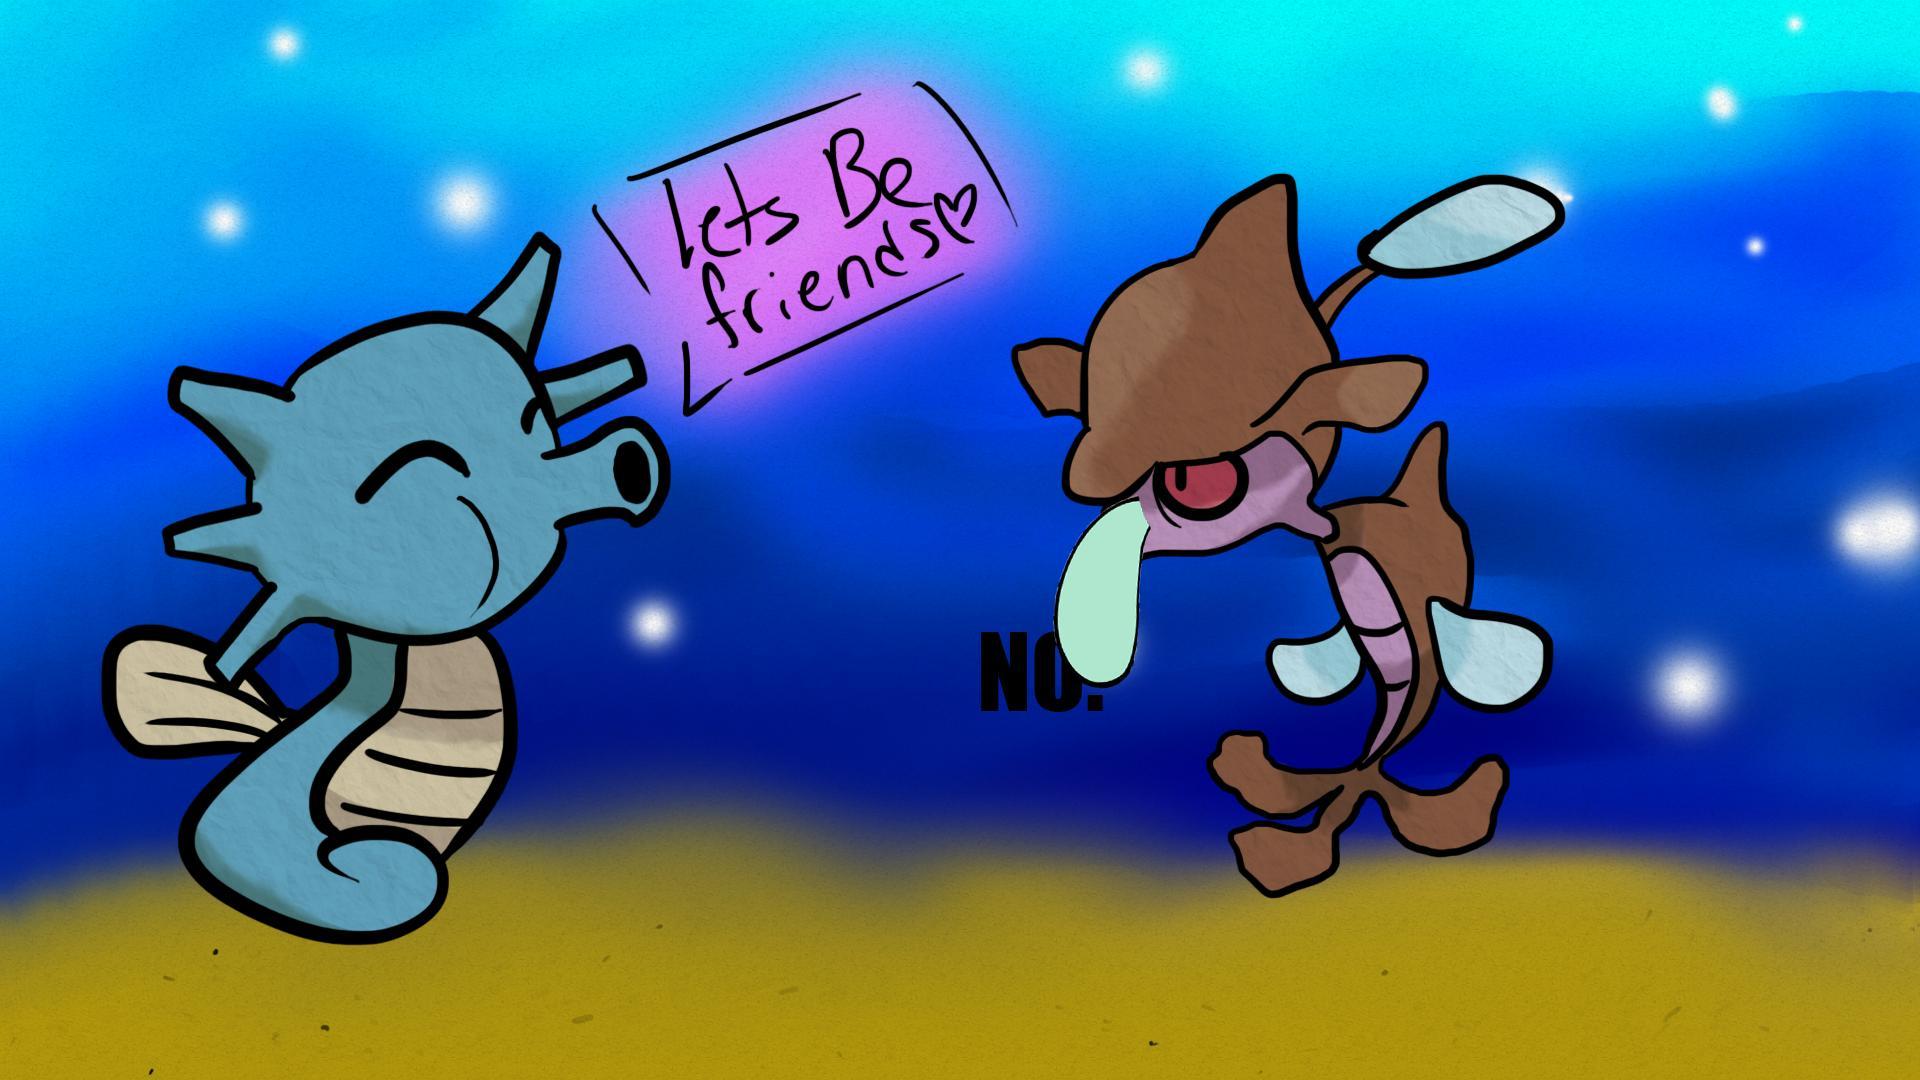 How I imagine seahorse pokemon will interact (OC)